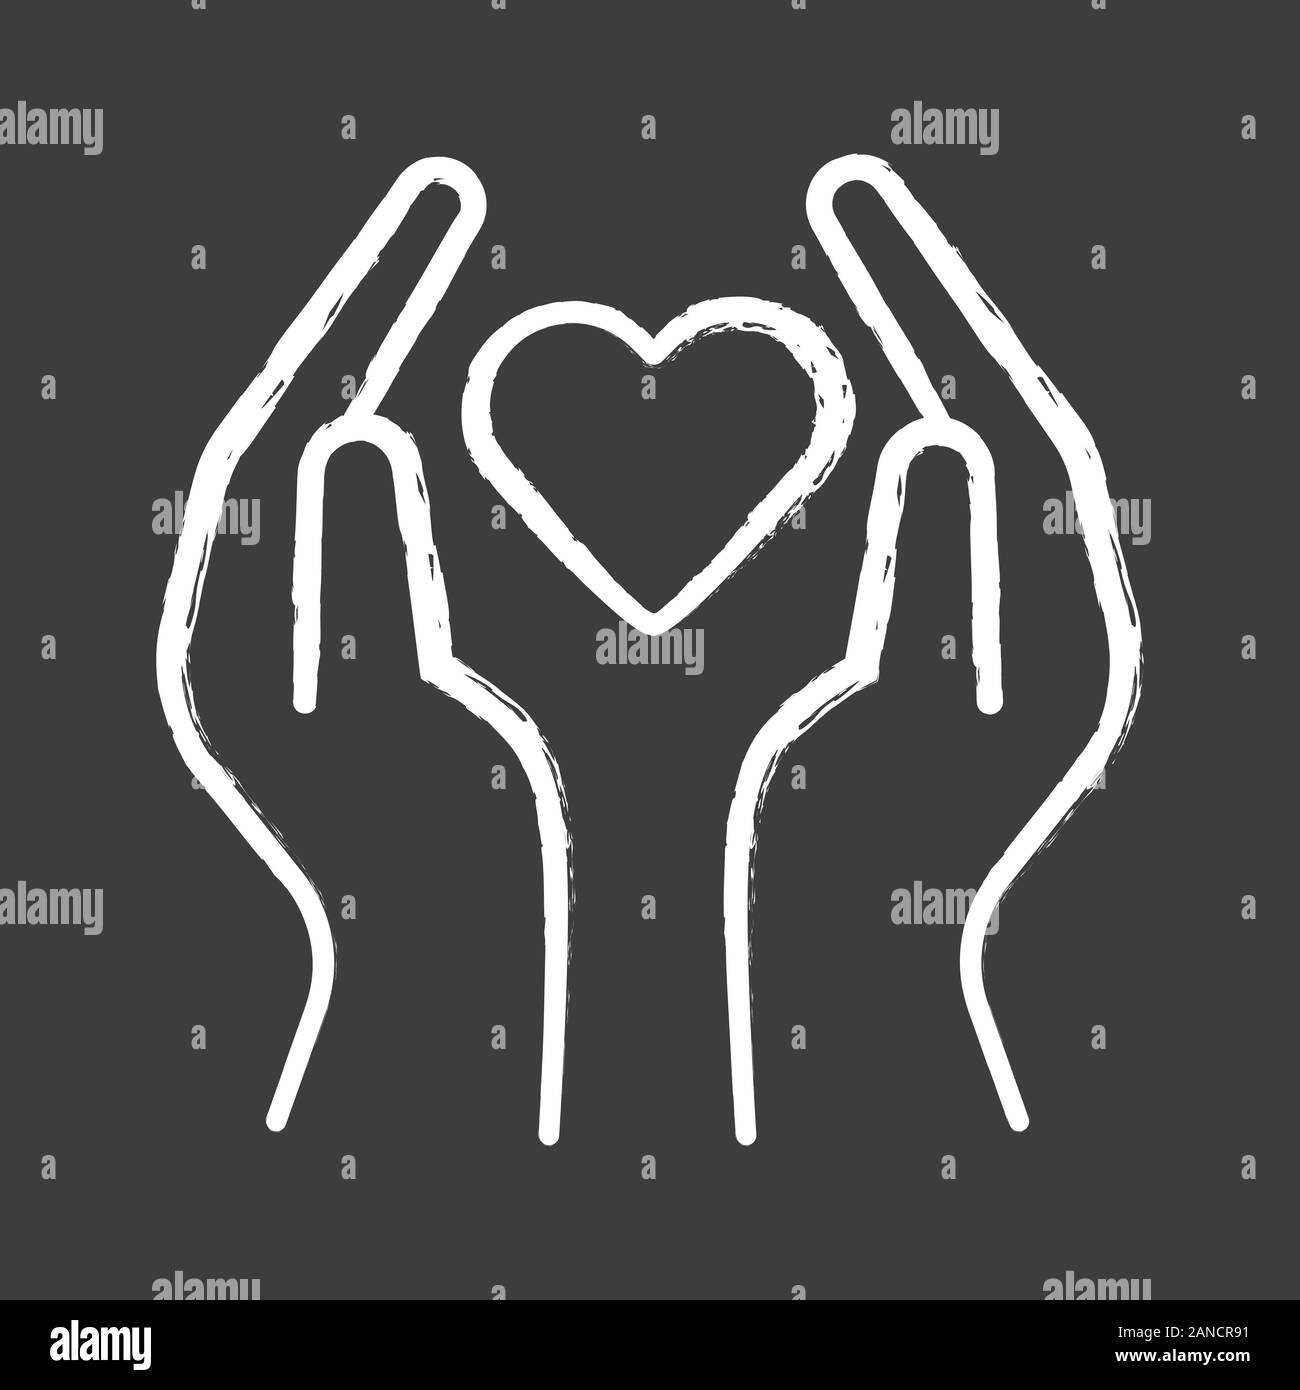 Les mains à l'icône Chalk coeur. L'activité de bénévolat. Organisation sans but lucratif. Projet de charité. L'amitié et l'amour. L'aide humanitaire. Service communautaire Illustration de Vecteur